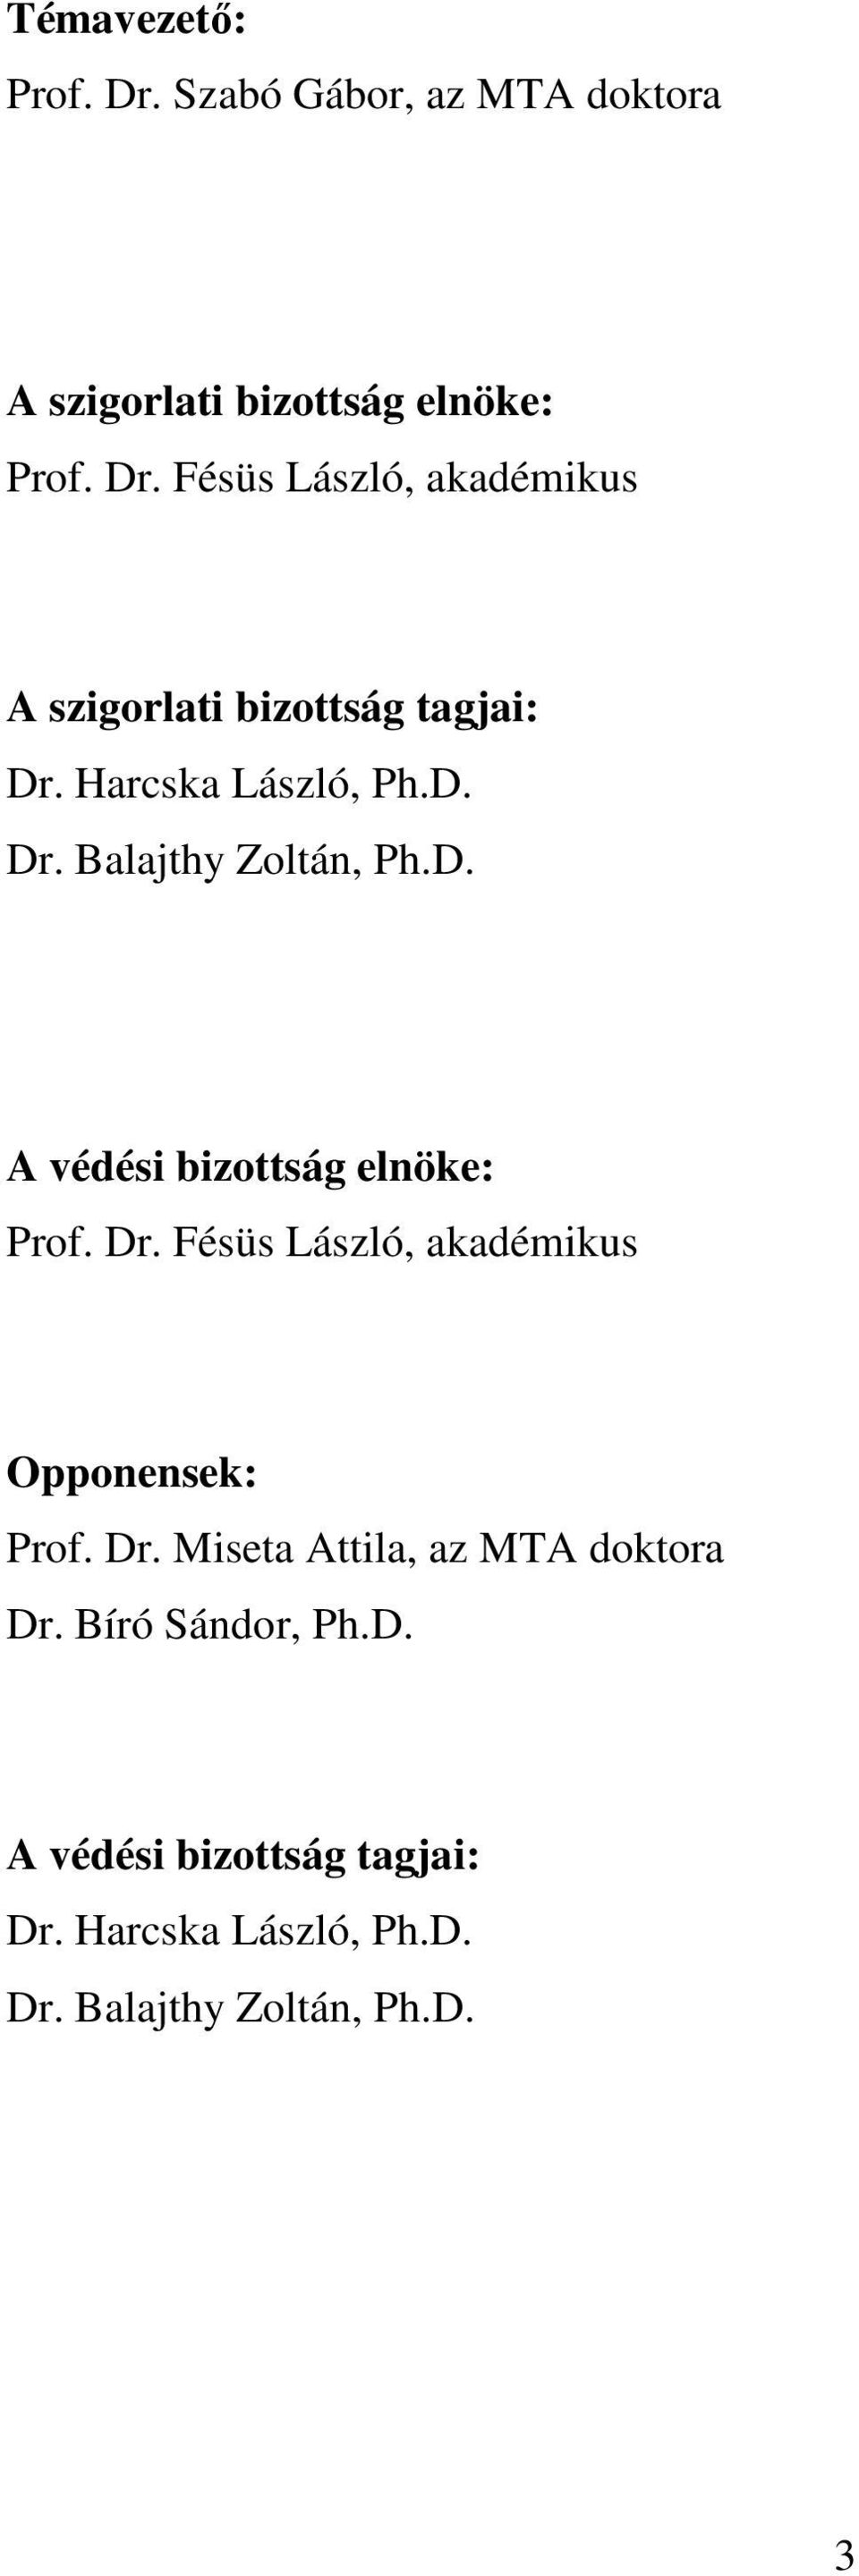 Dr. Miseta Attila, az MTA doktora Dr. Bíró Sándor, Ph.D. A védési bizottság tagjai: Dr.